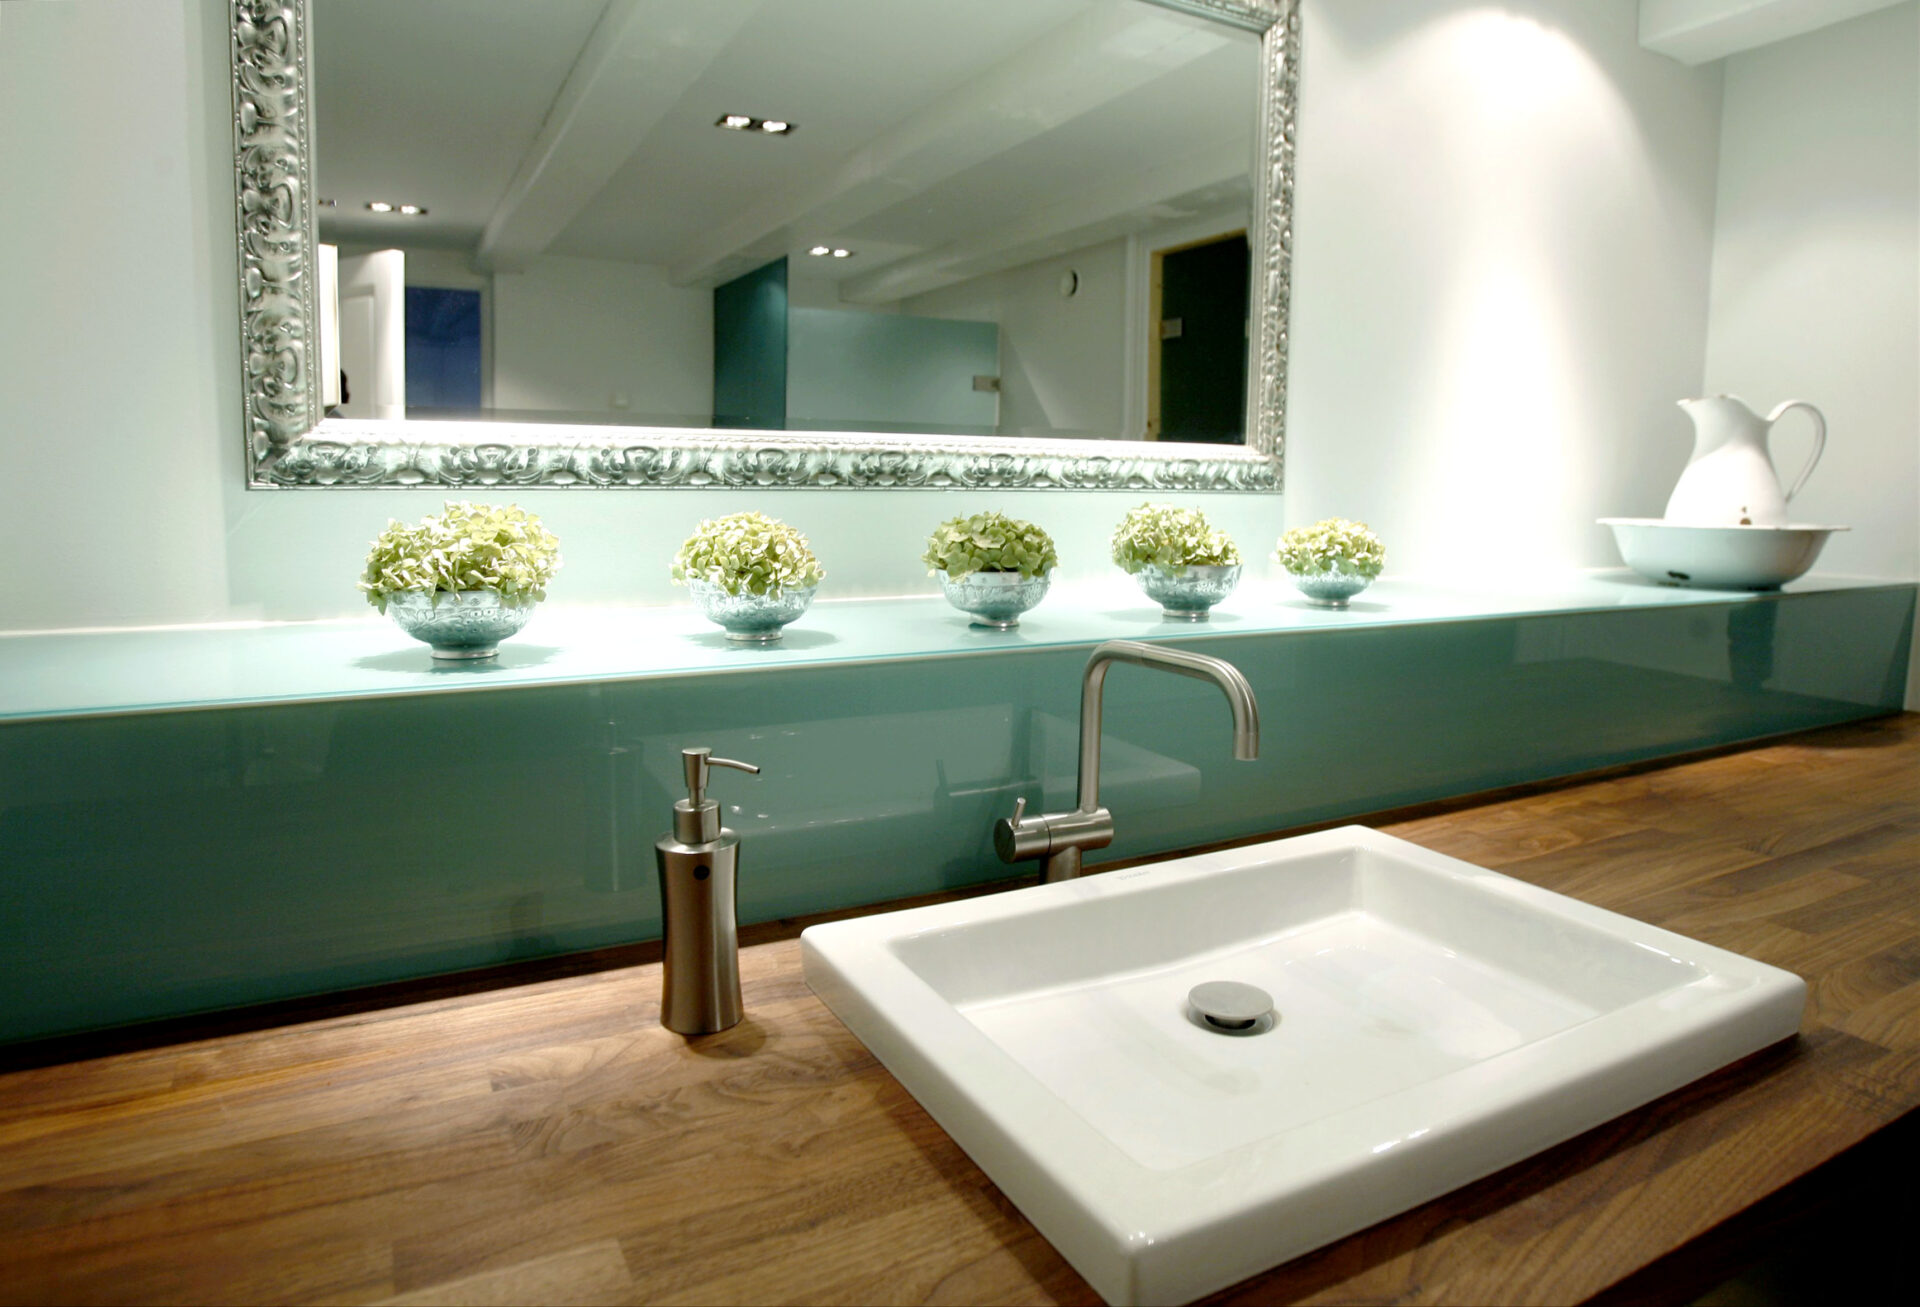 Glas kan bruges til praktiske hylder på badeværelset